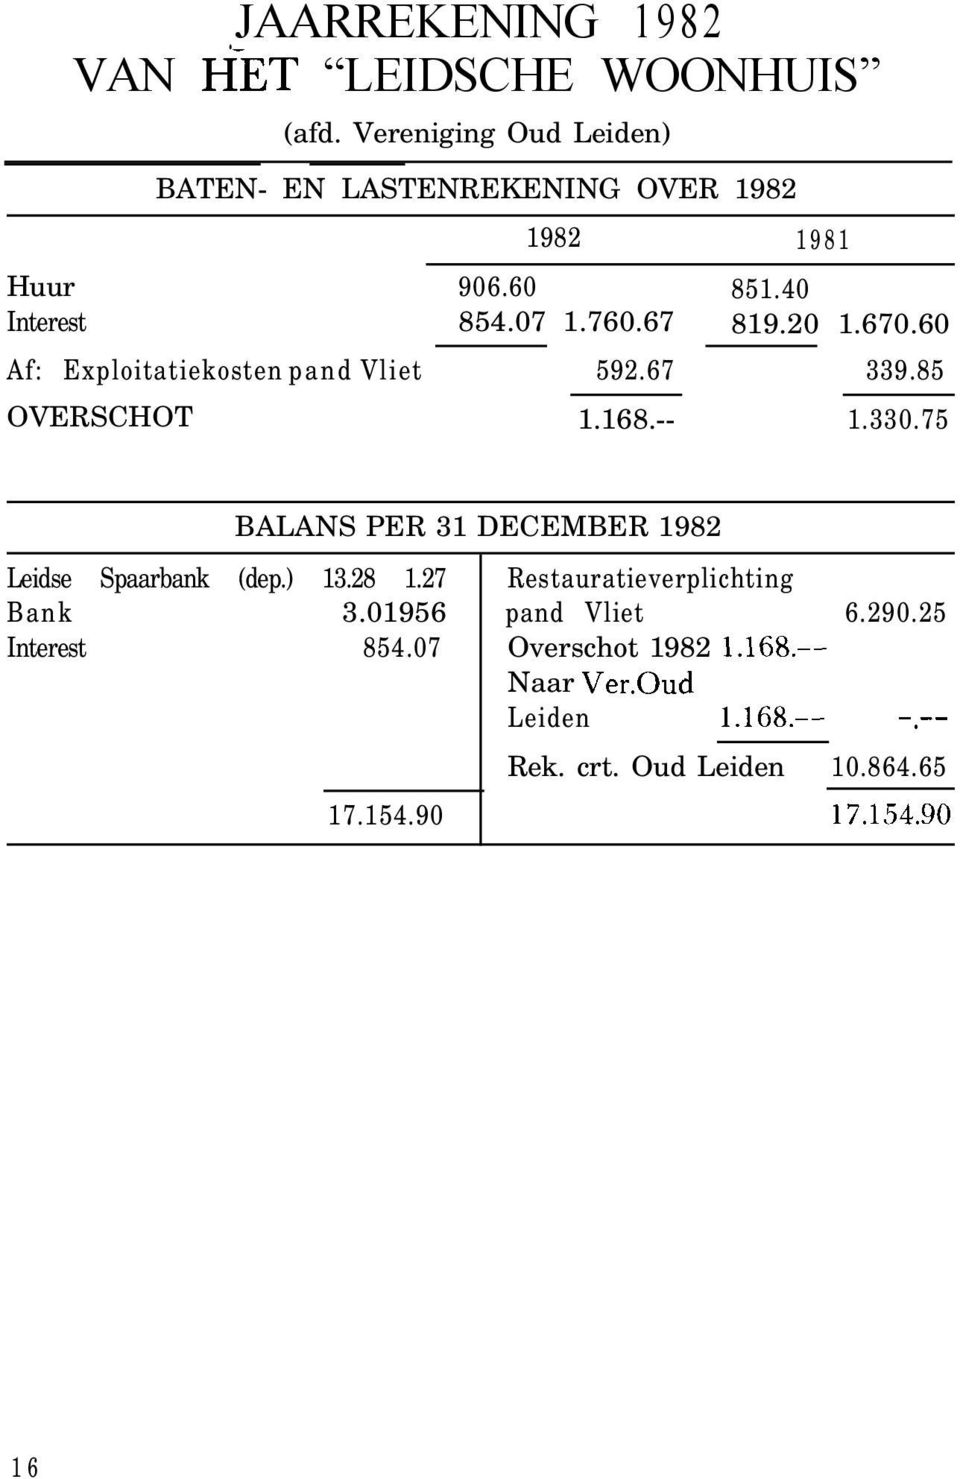 60 Af: Exploitatiekosten pand Vliet 592.67 339.85 OVERSCHOT 1.168.-- 1.330.75 Leidse Spaarbank (dep.) 13.28 1.27 Bank 3.